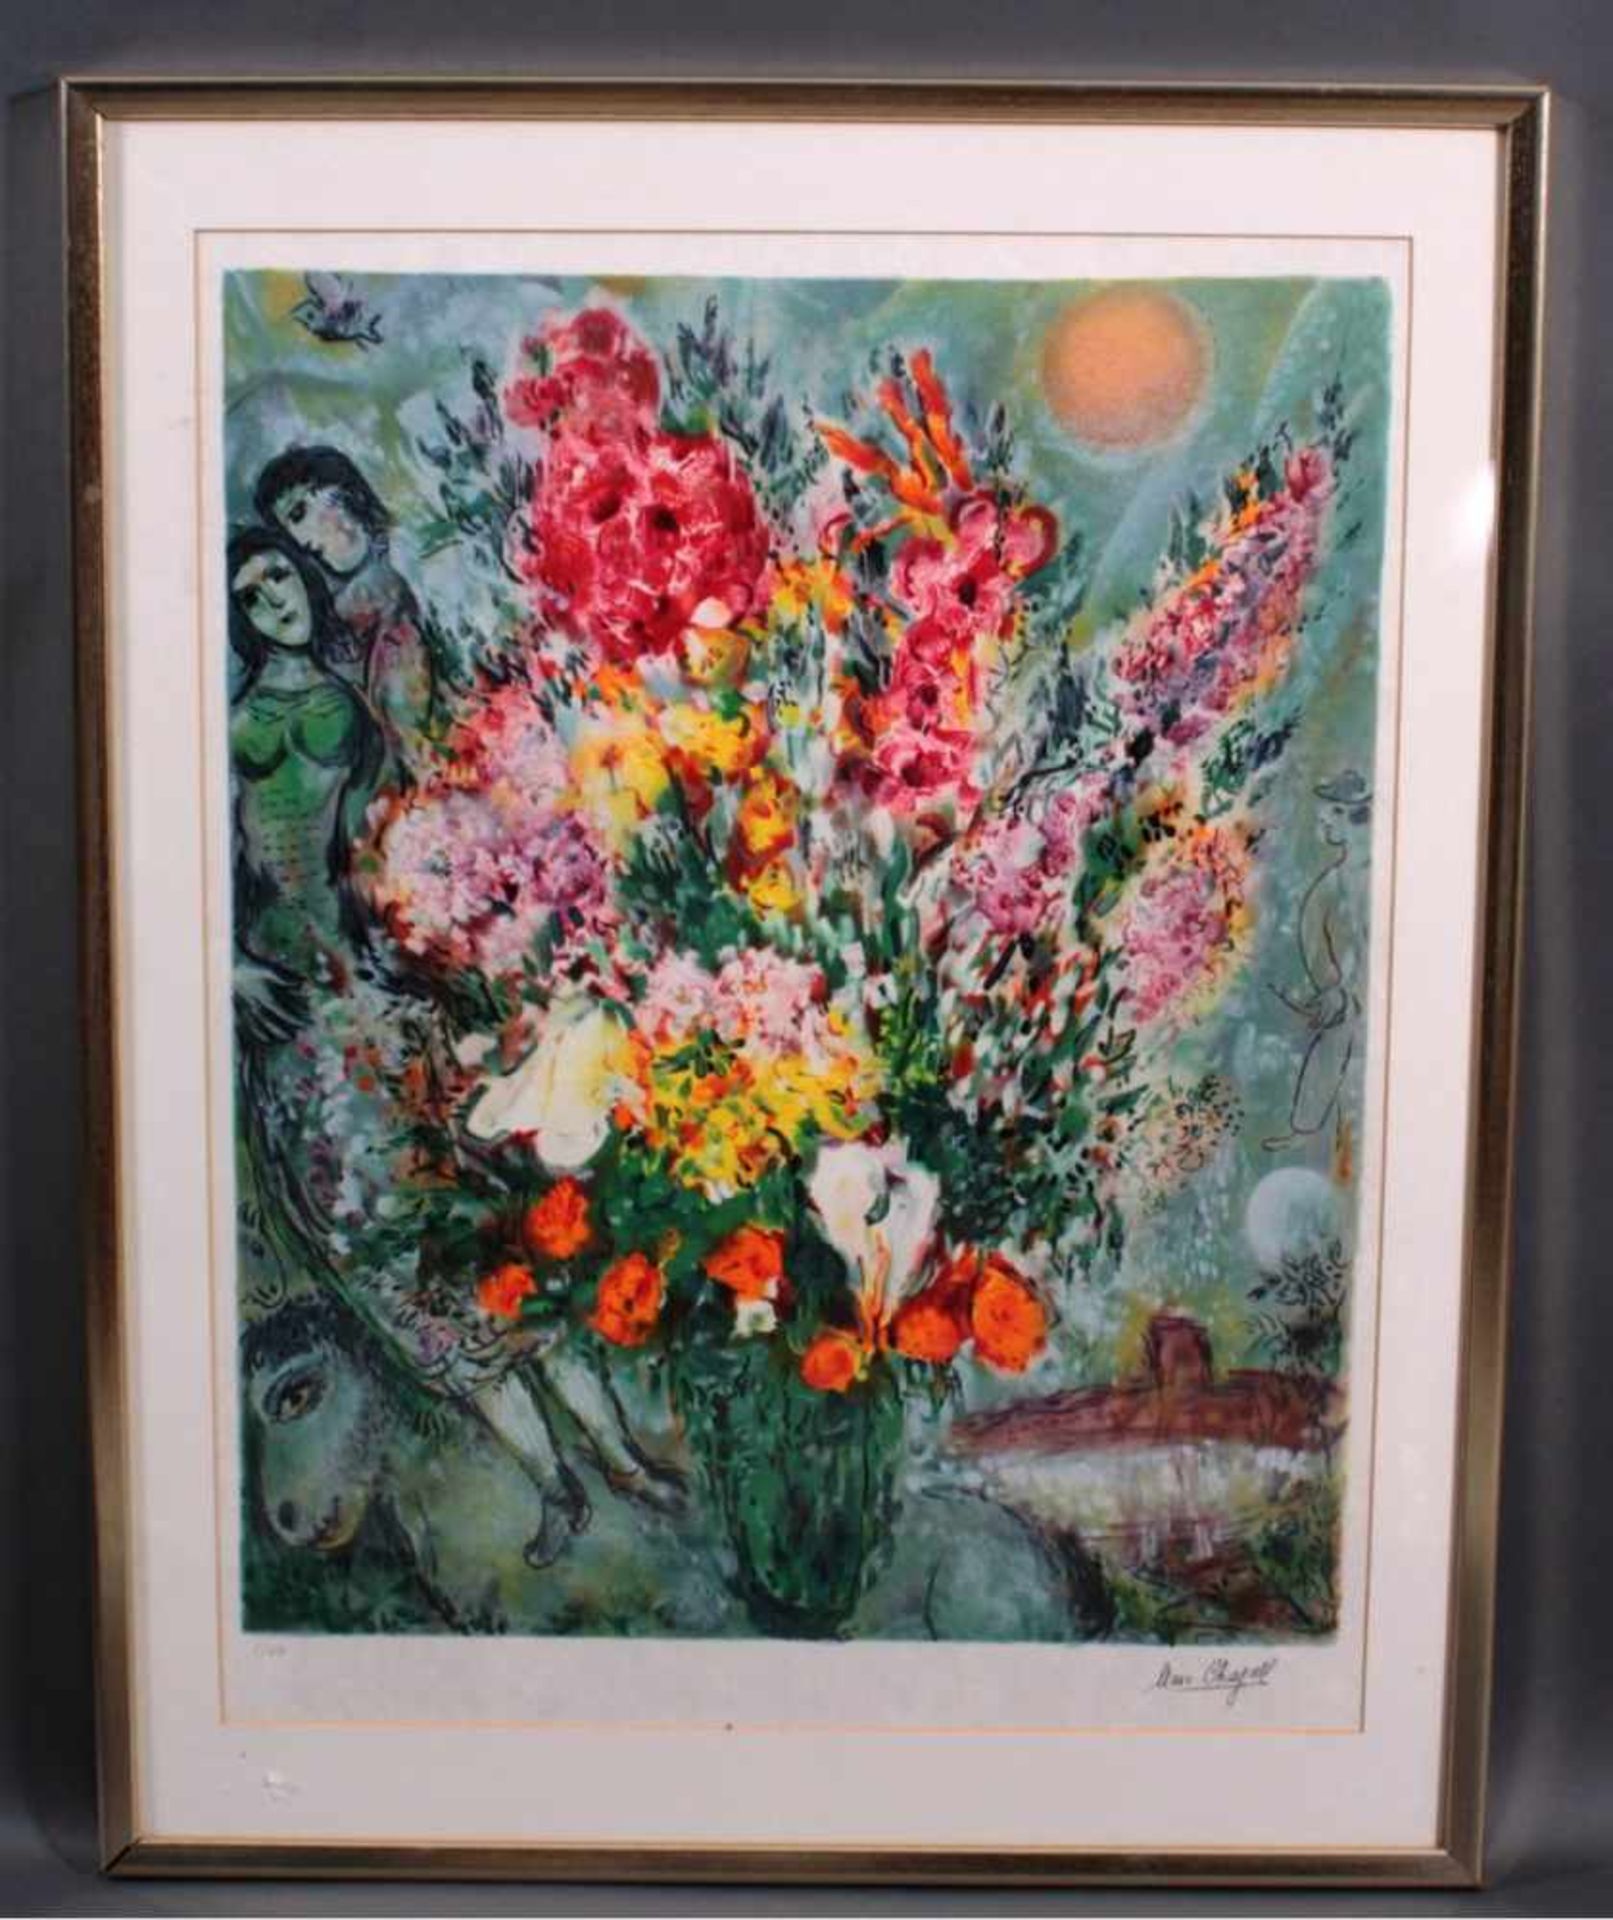 Marc Chagall 1887-1985, Le BougeutVon 1981, 2 von 250, Farblithographie, in der Plattesigniert "Marc